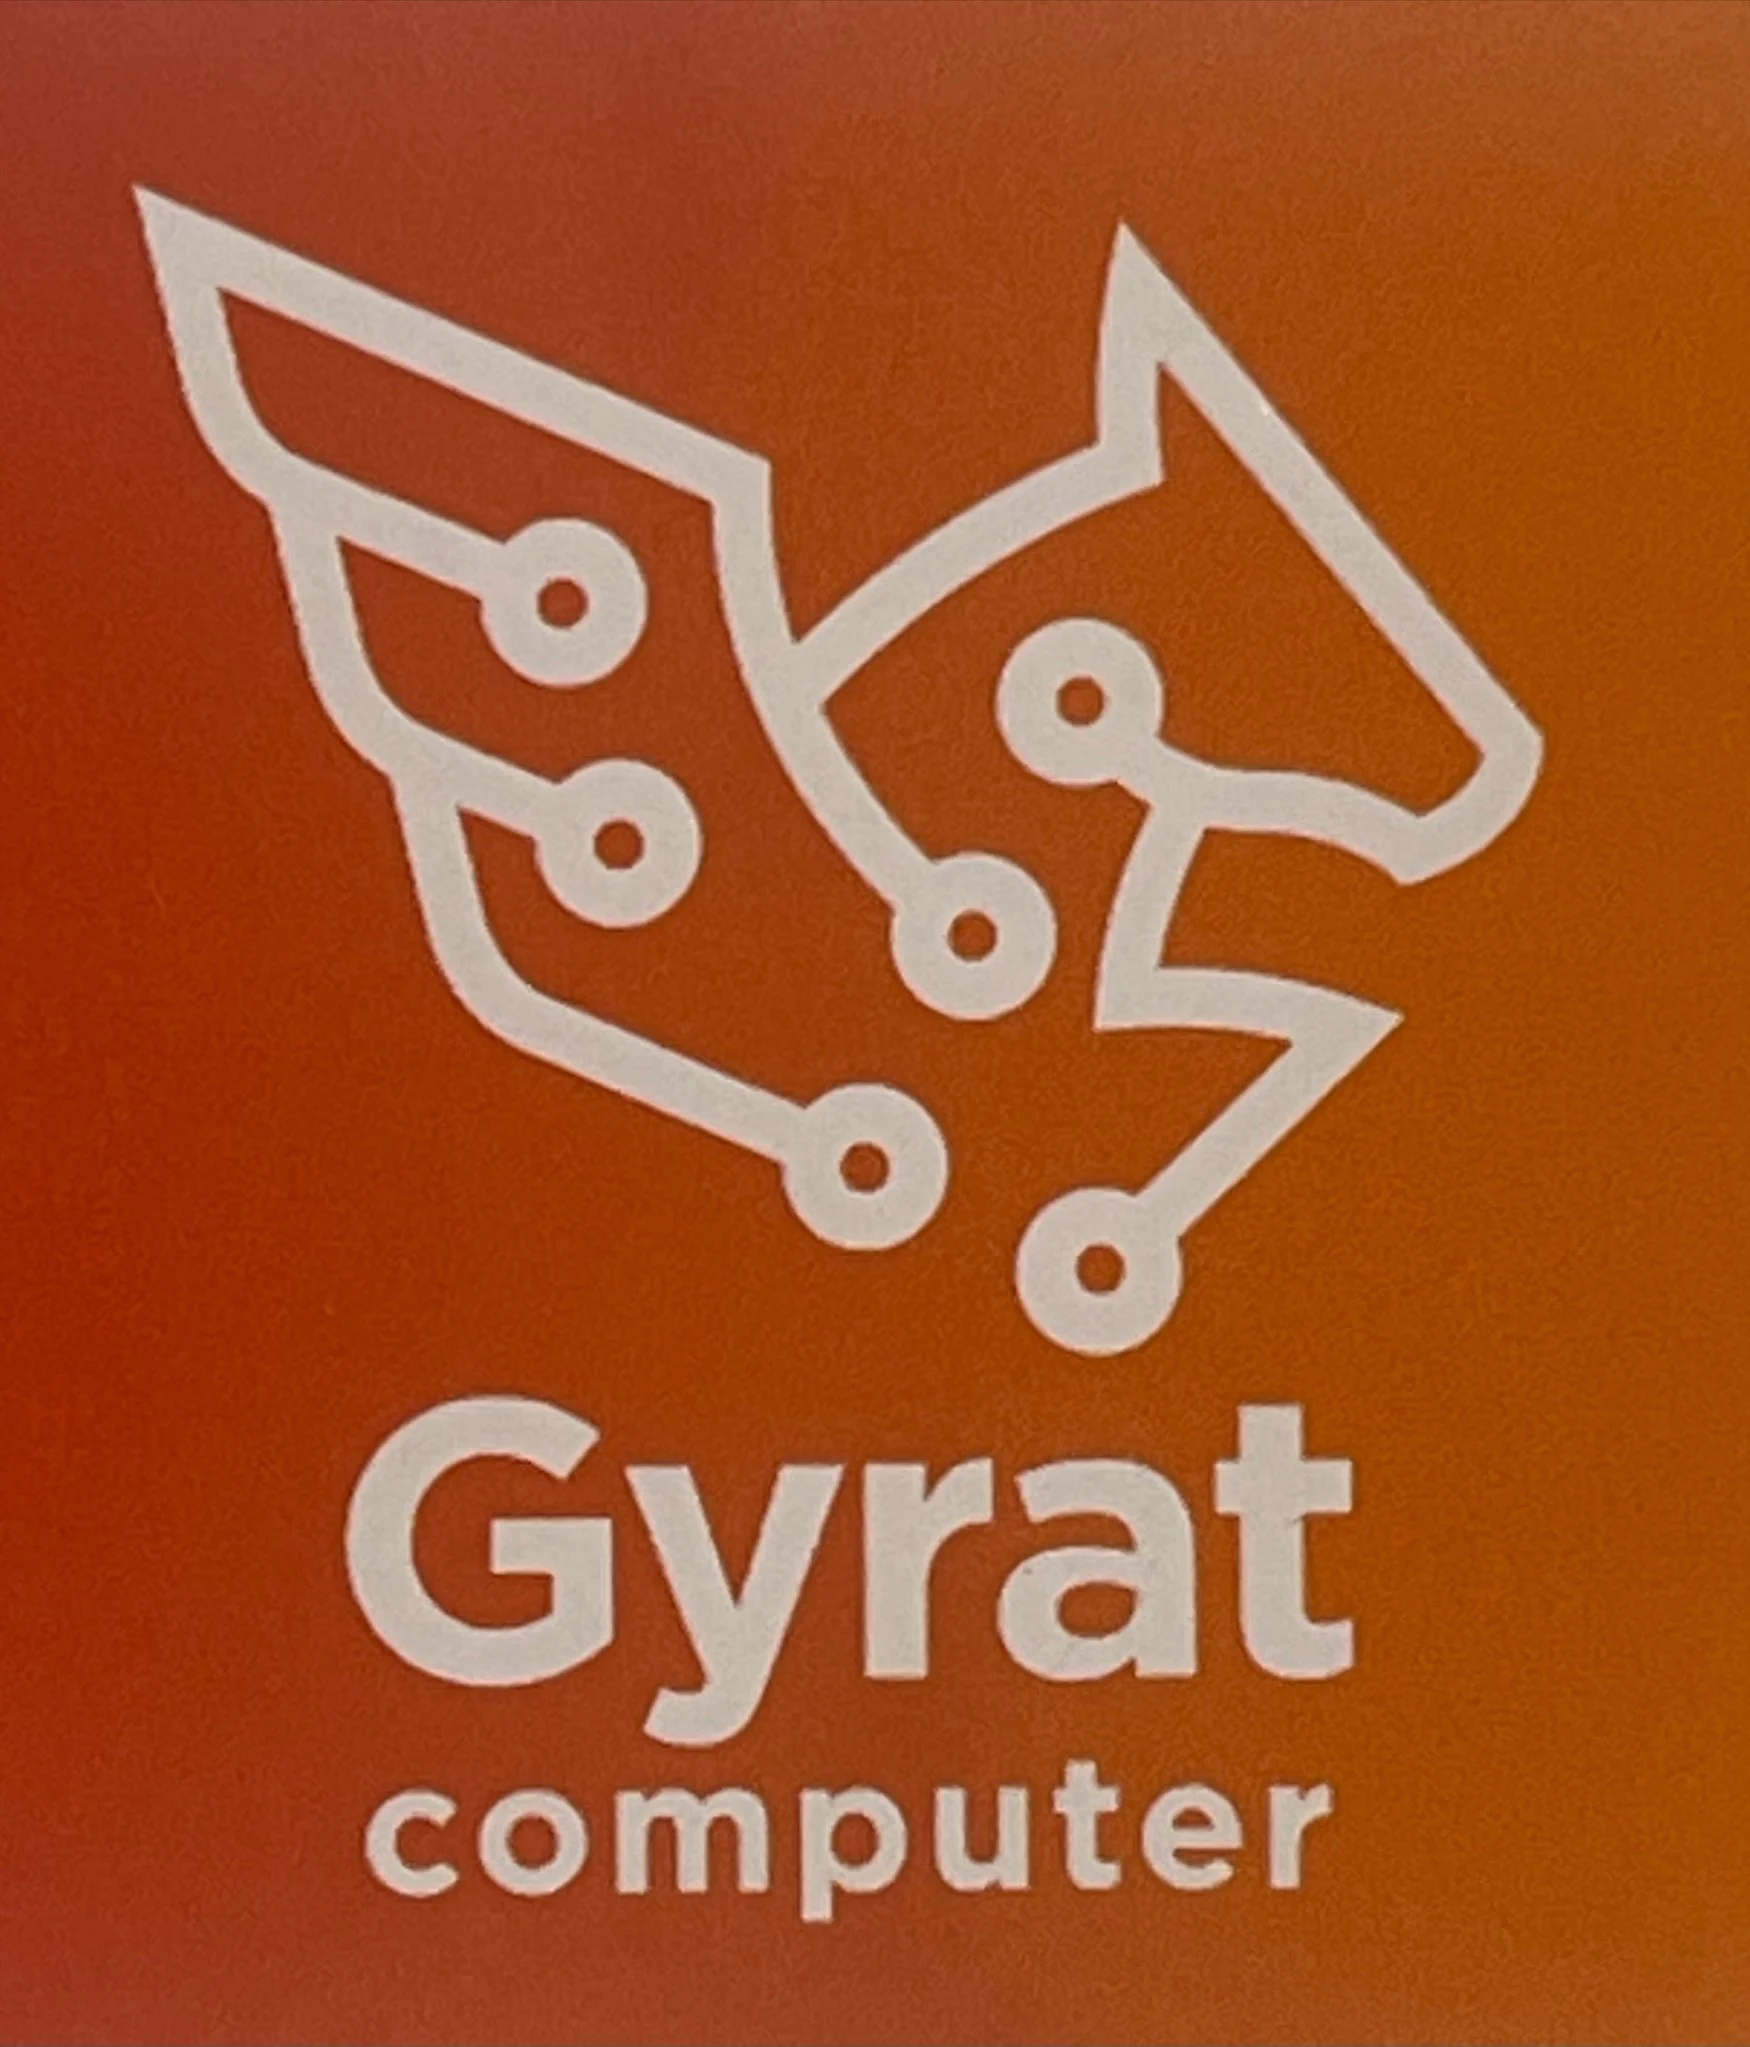 Gyrat computer (Dashoguz)